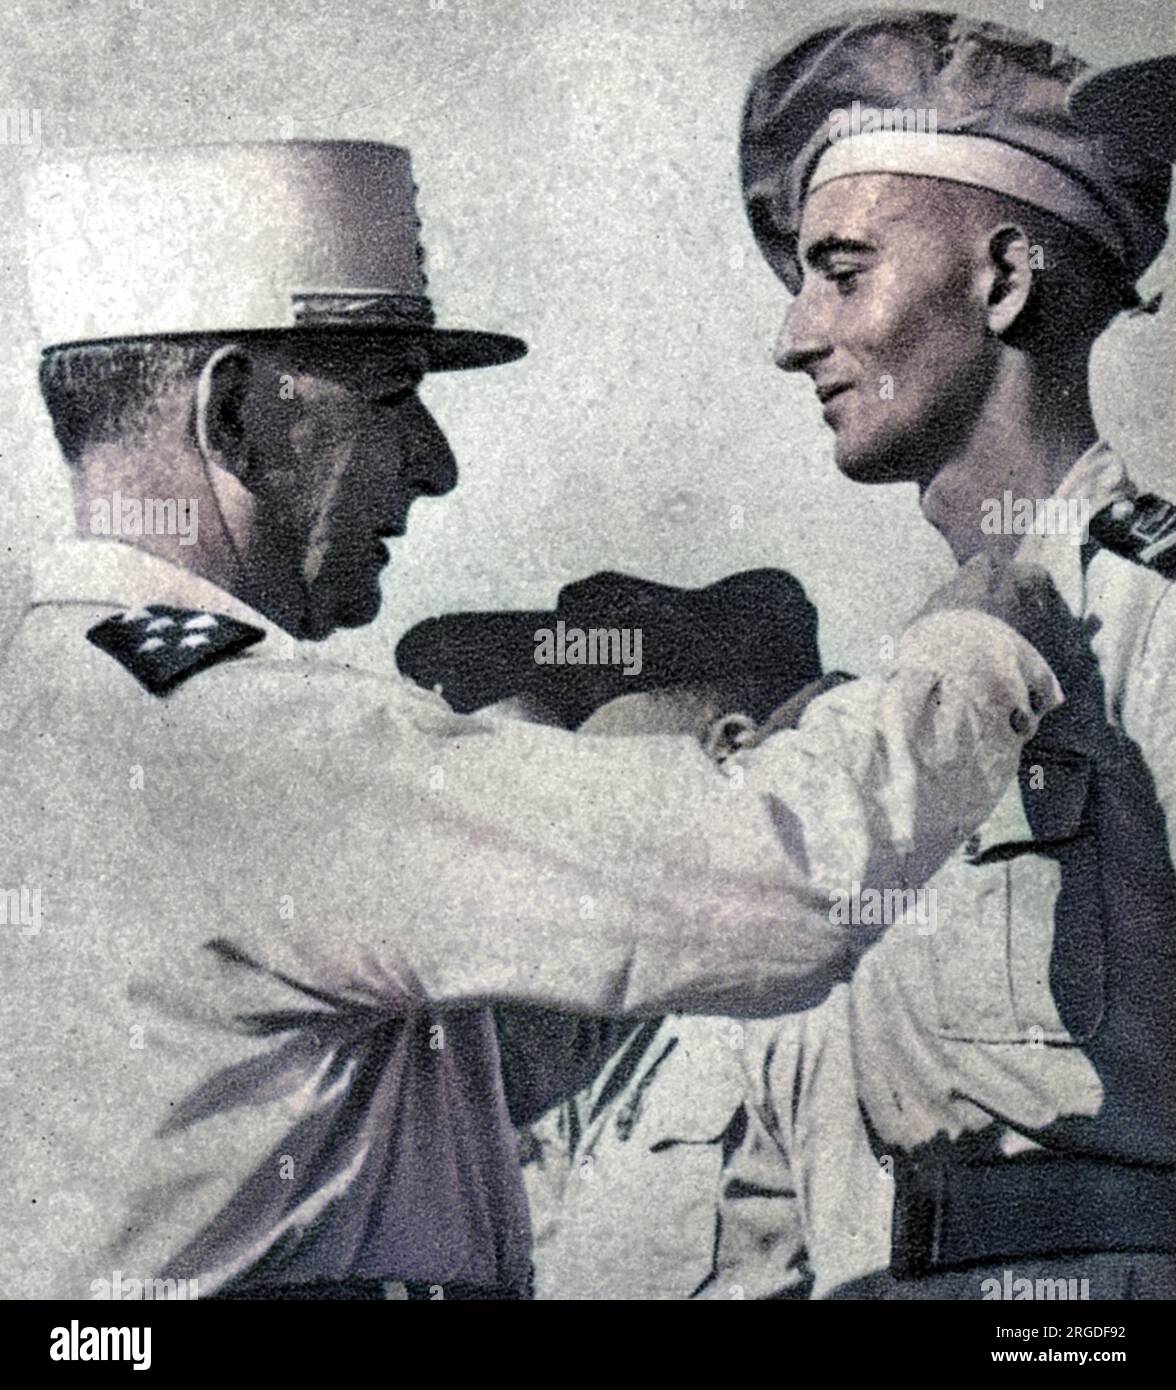 Général JEAN de LATTRE DE TASSIGNY commandant militaire français, ici vu épingler une médaille sur son fils Bernard en 1951. Banque D'Images